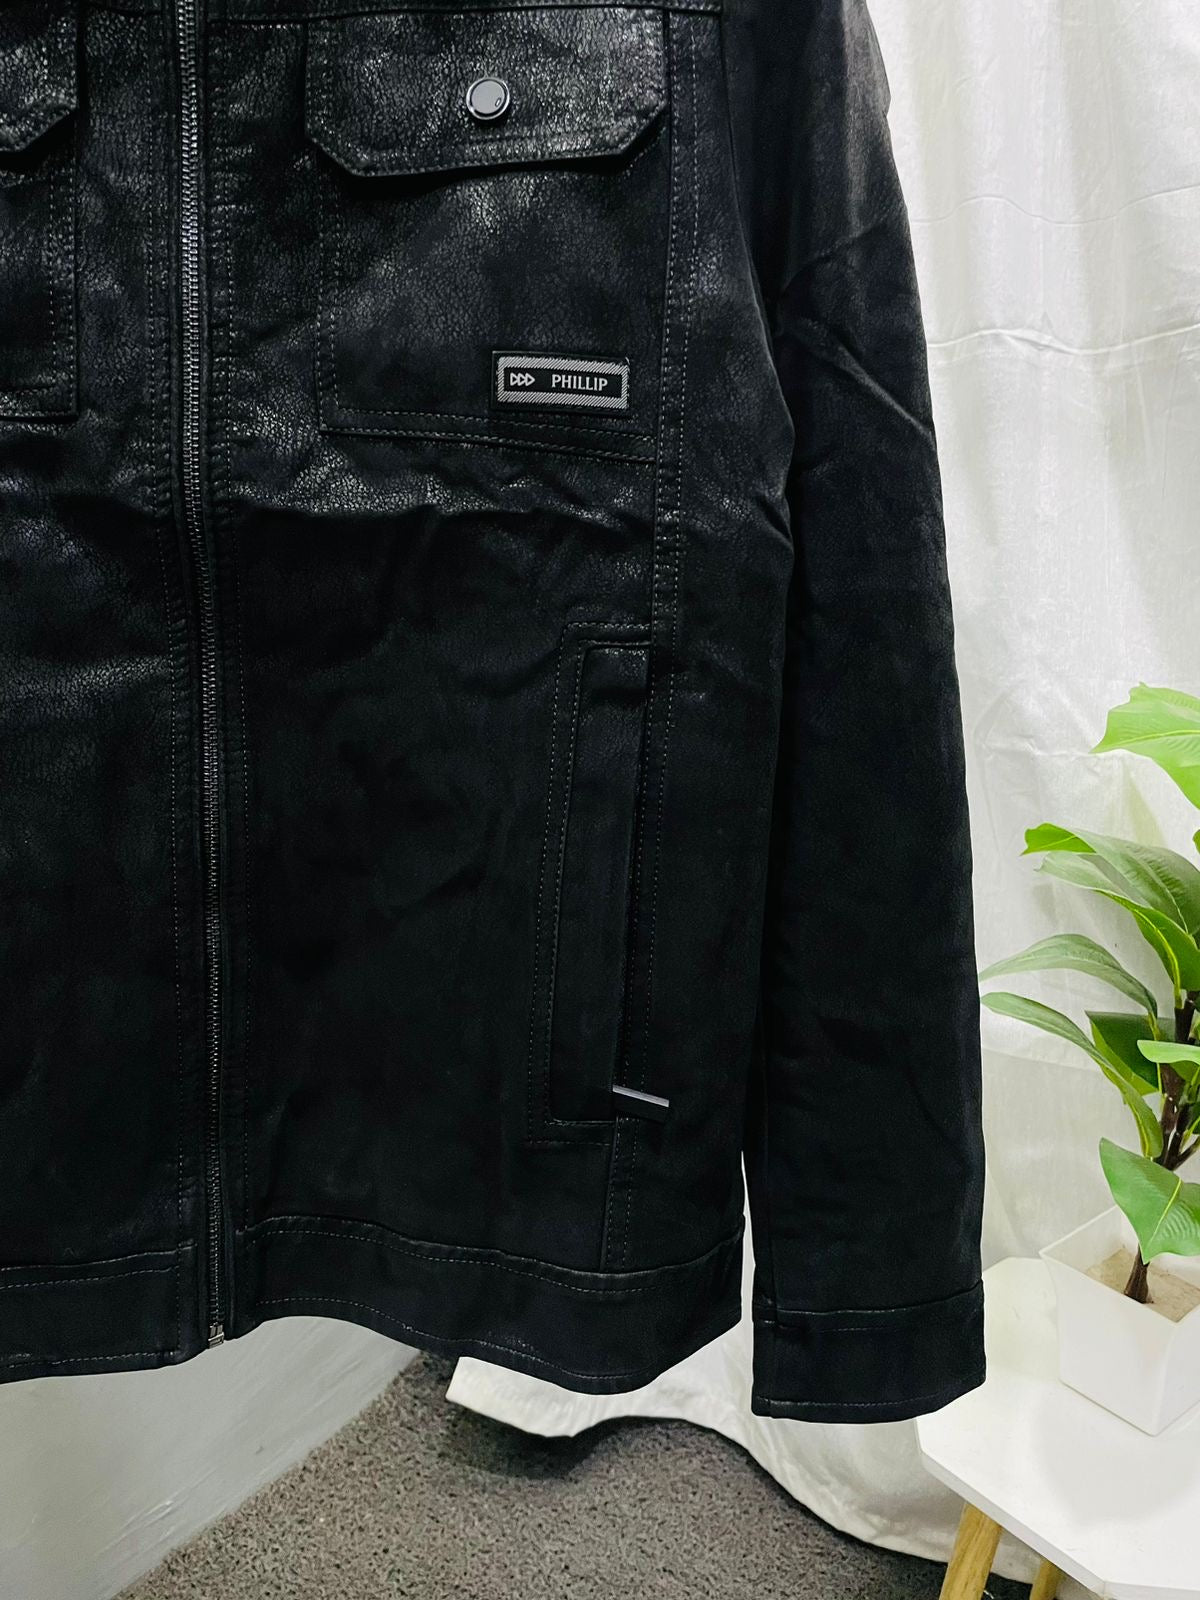 Black Winter Mens Pigskin Genuine Leather Bomber Jacket